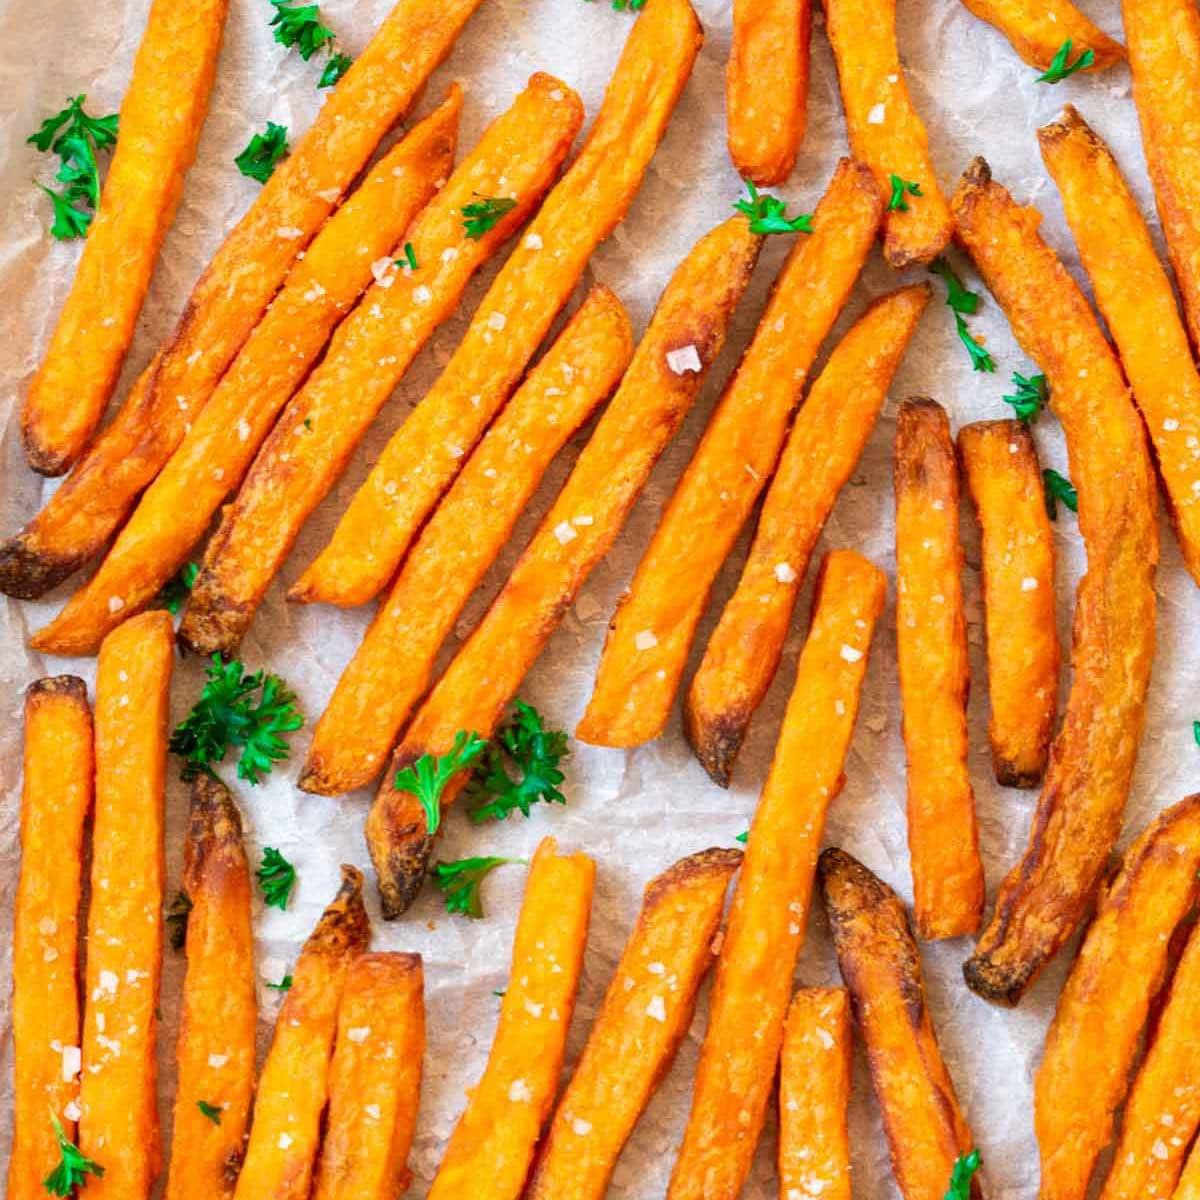 https://thebigmansworld.com/wp-content/uploads/2022/08/air-fryer-sweet-potato-fries-recipe.jpg